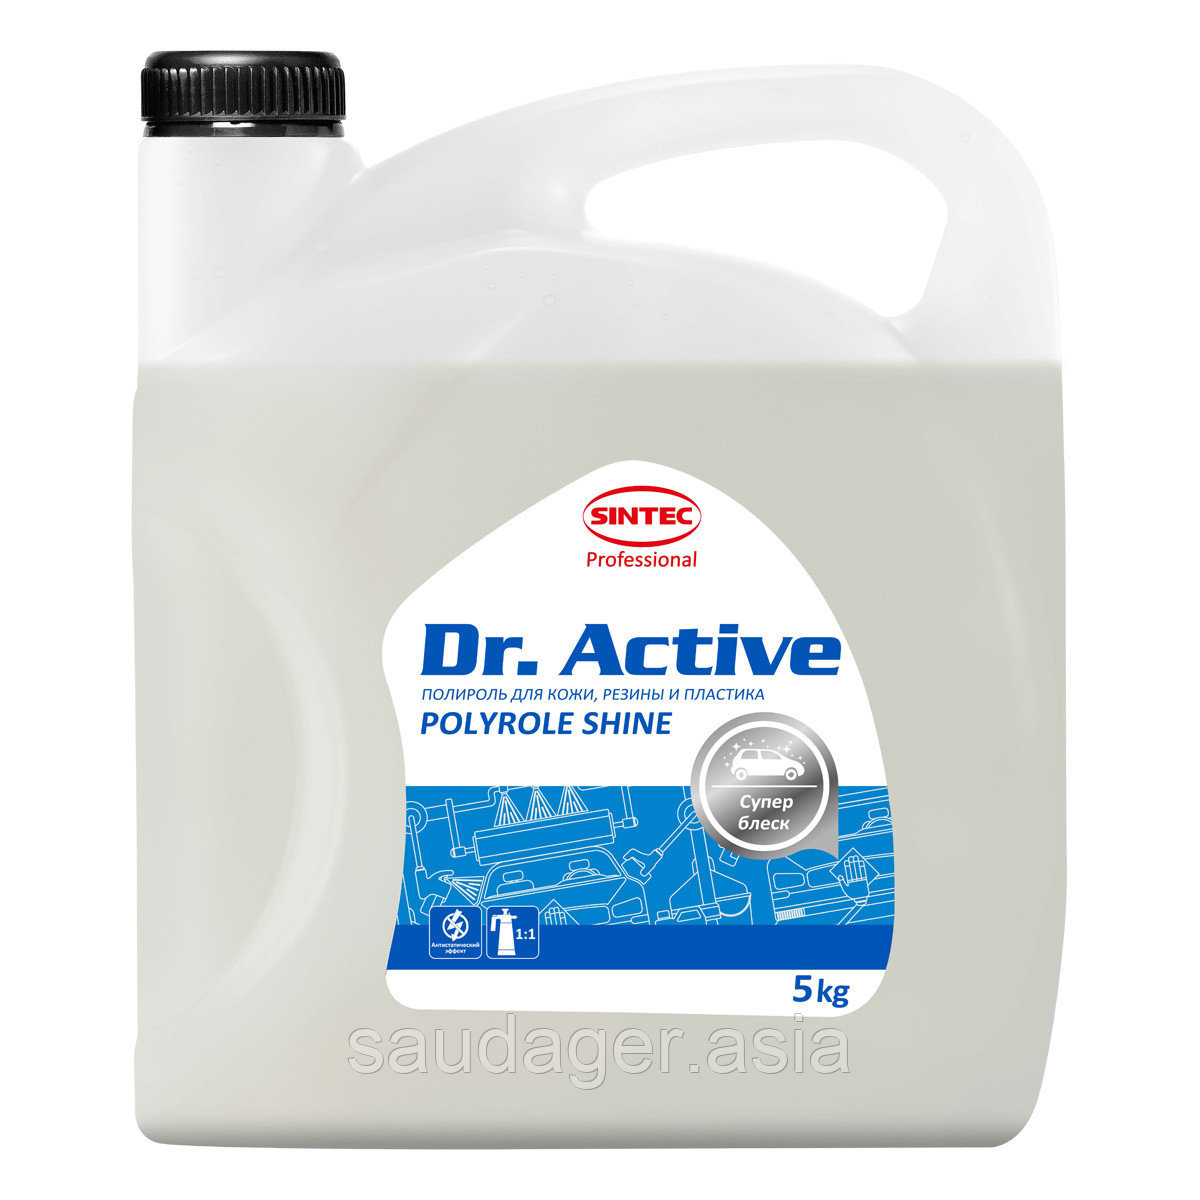 Sintec Dr. Active Полироль для кожи, резины и пластика "Polyrole Shine" (5 кг)